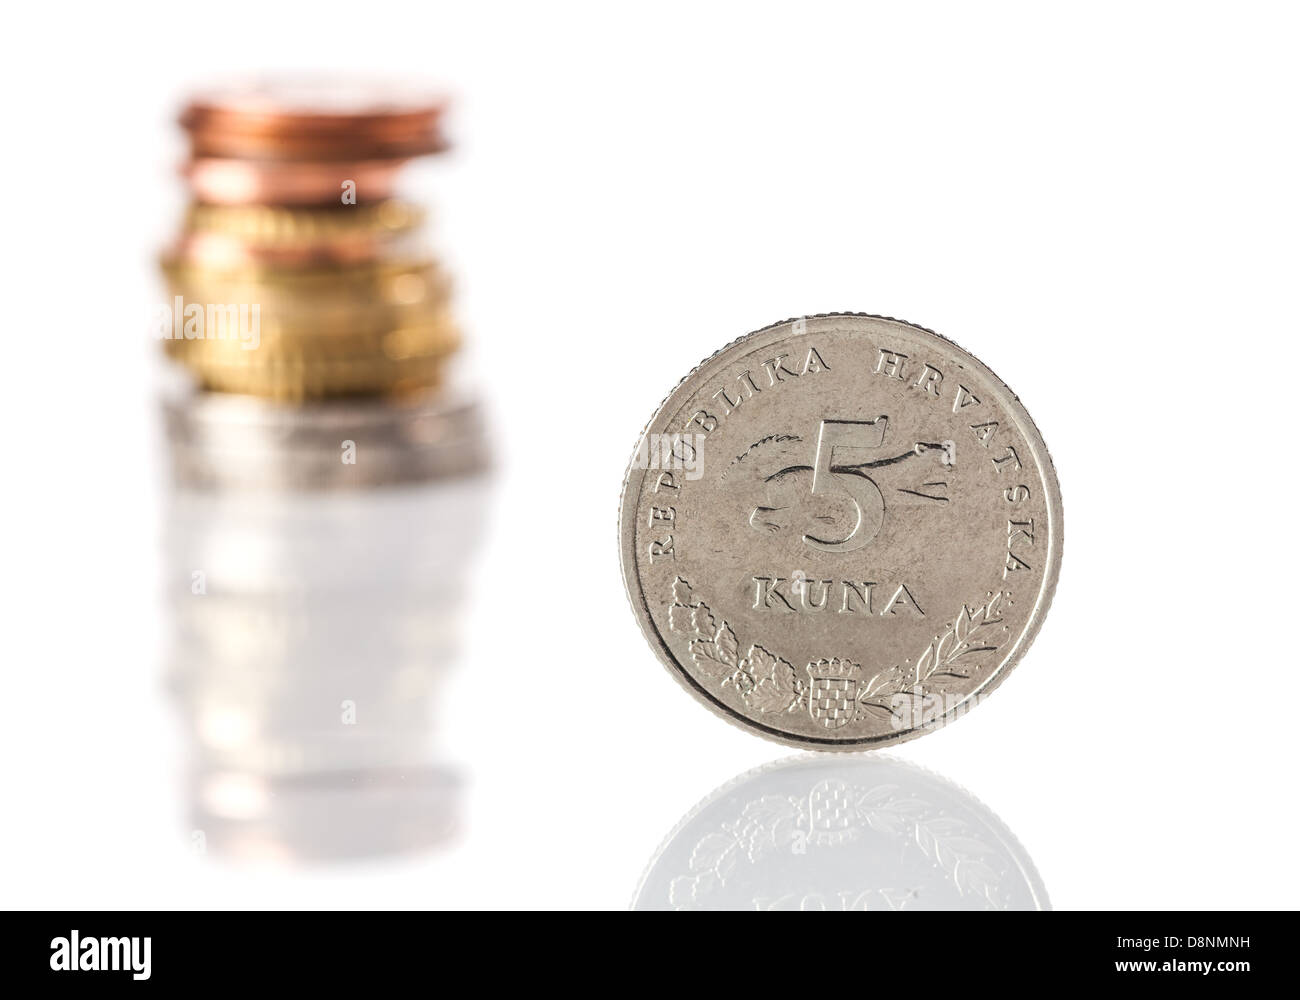 Un comité permanent 5 kuna croate - pièce de monnaie - en face de la pile d'euros  et centimes d'euro sur une surface réfléchissante blanche Photo Stock -  Alamy